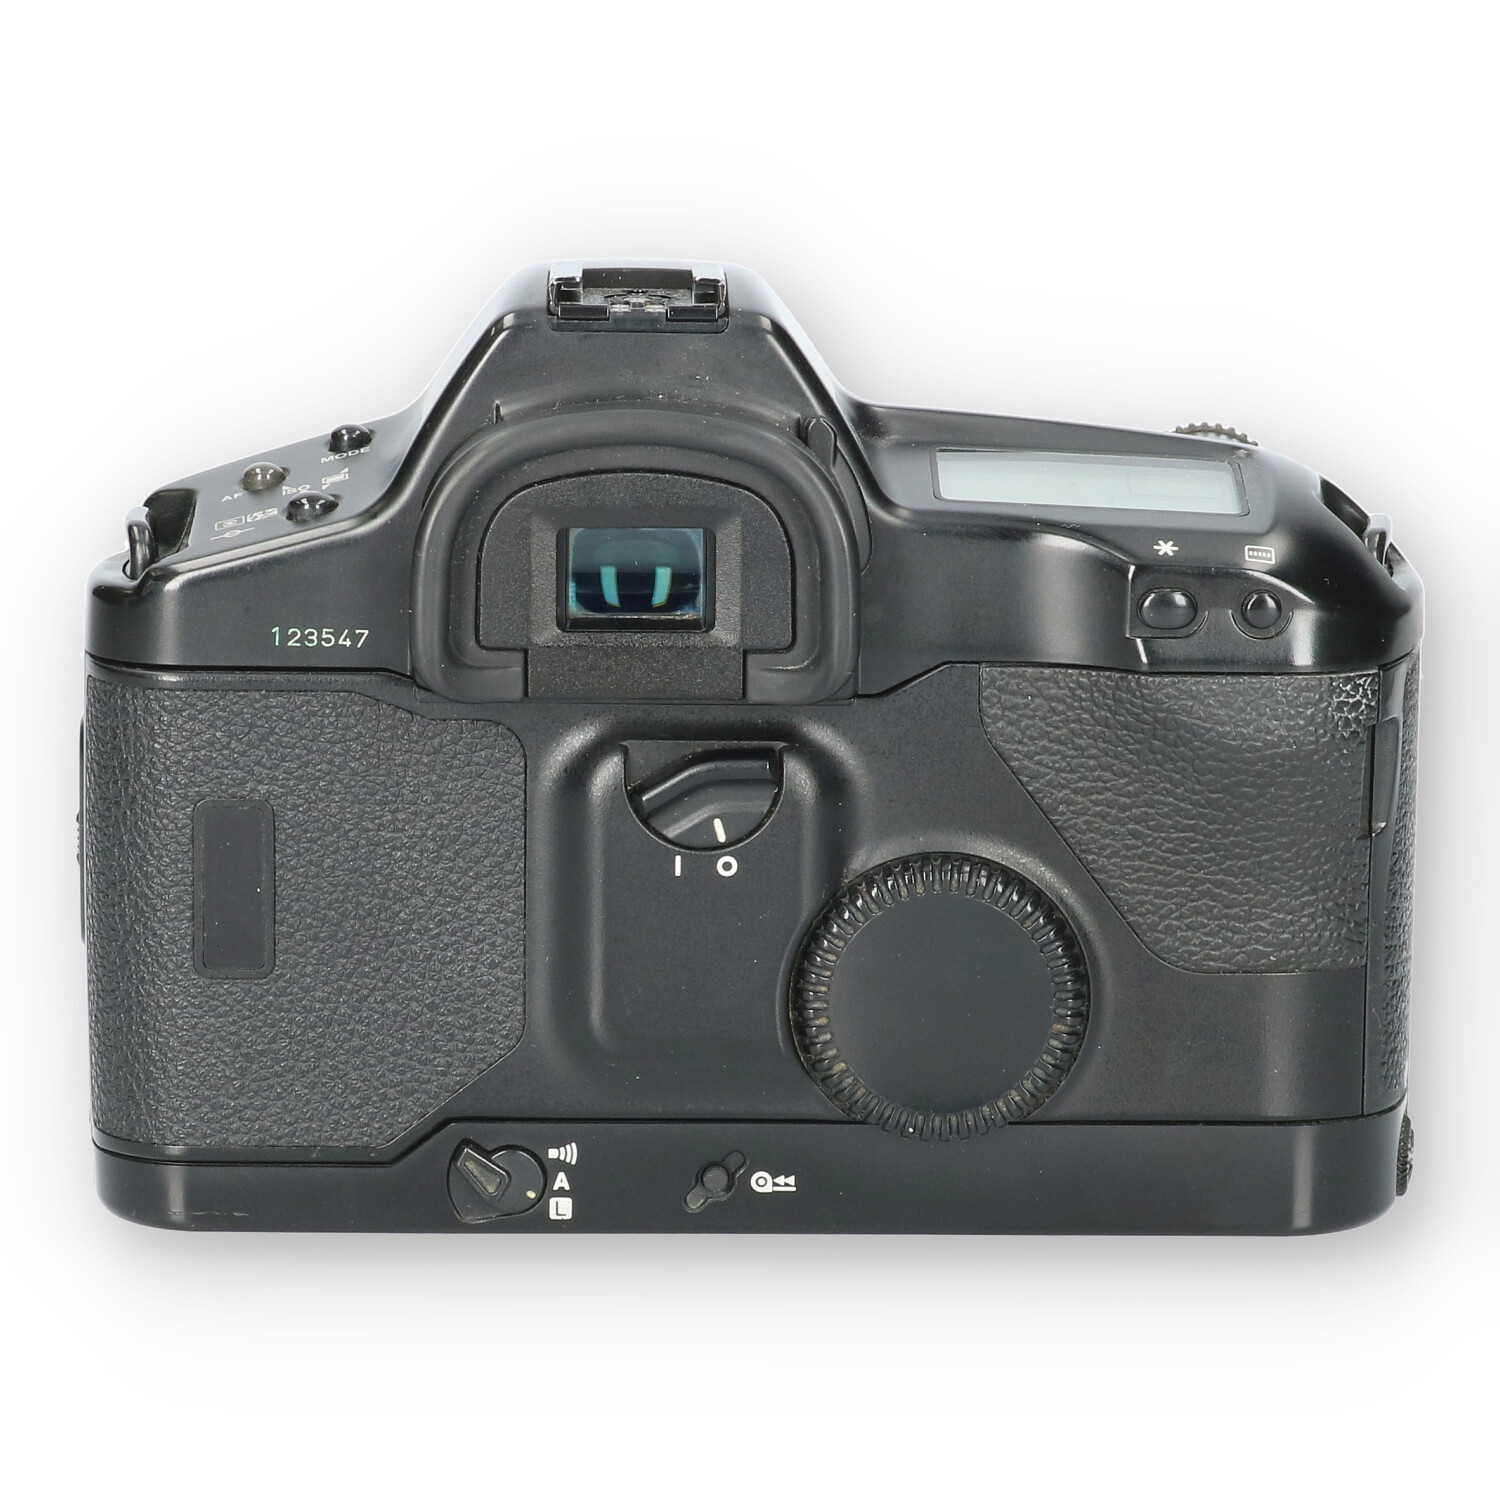 Canon Eos-1n body - No-Digital